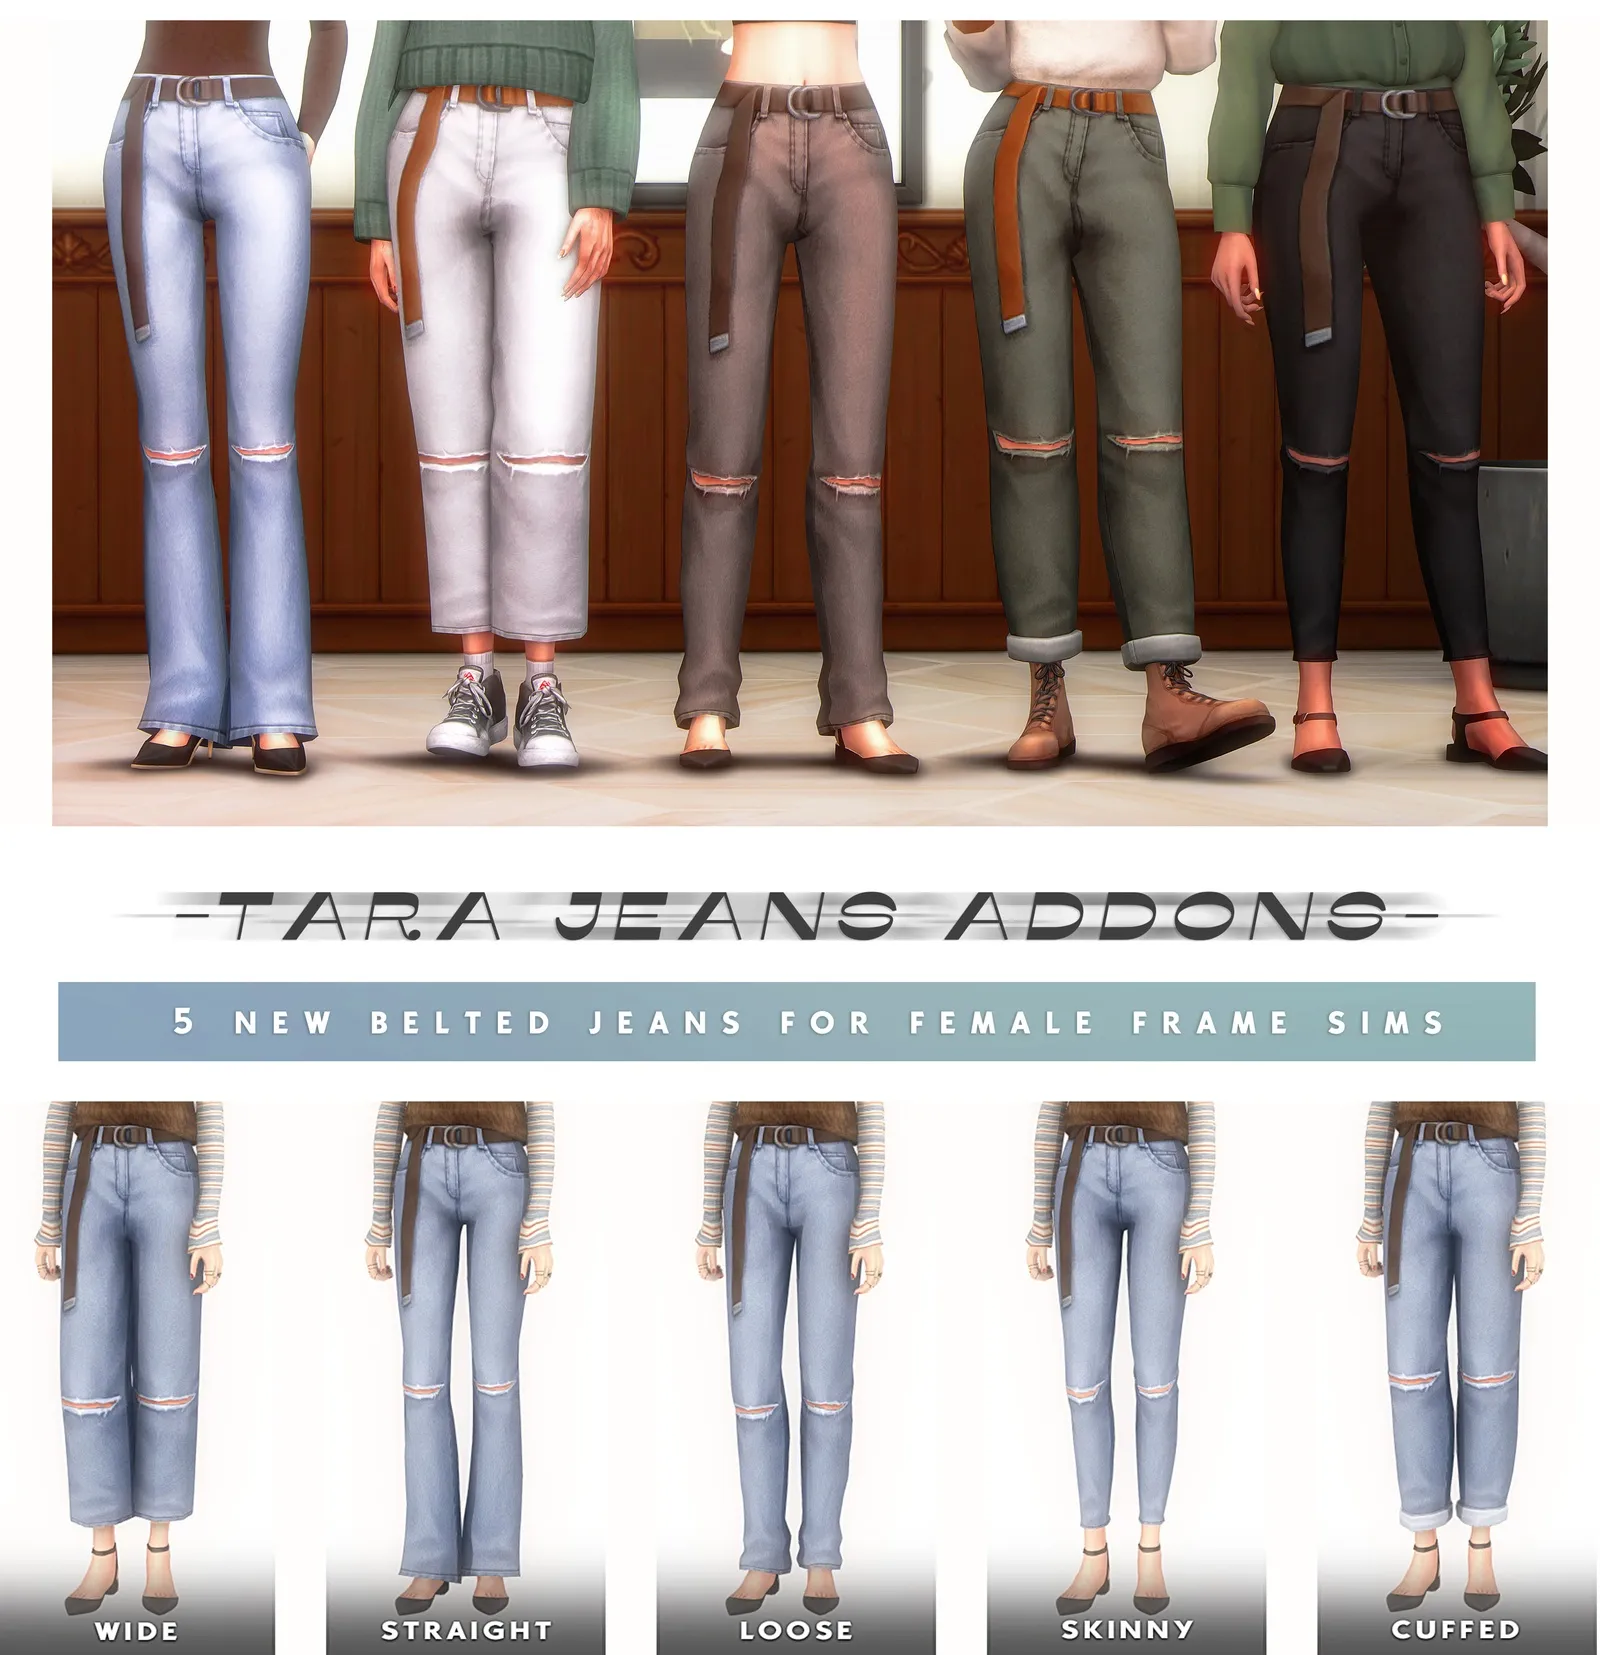 Tara Jeans Addons